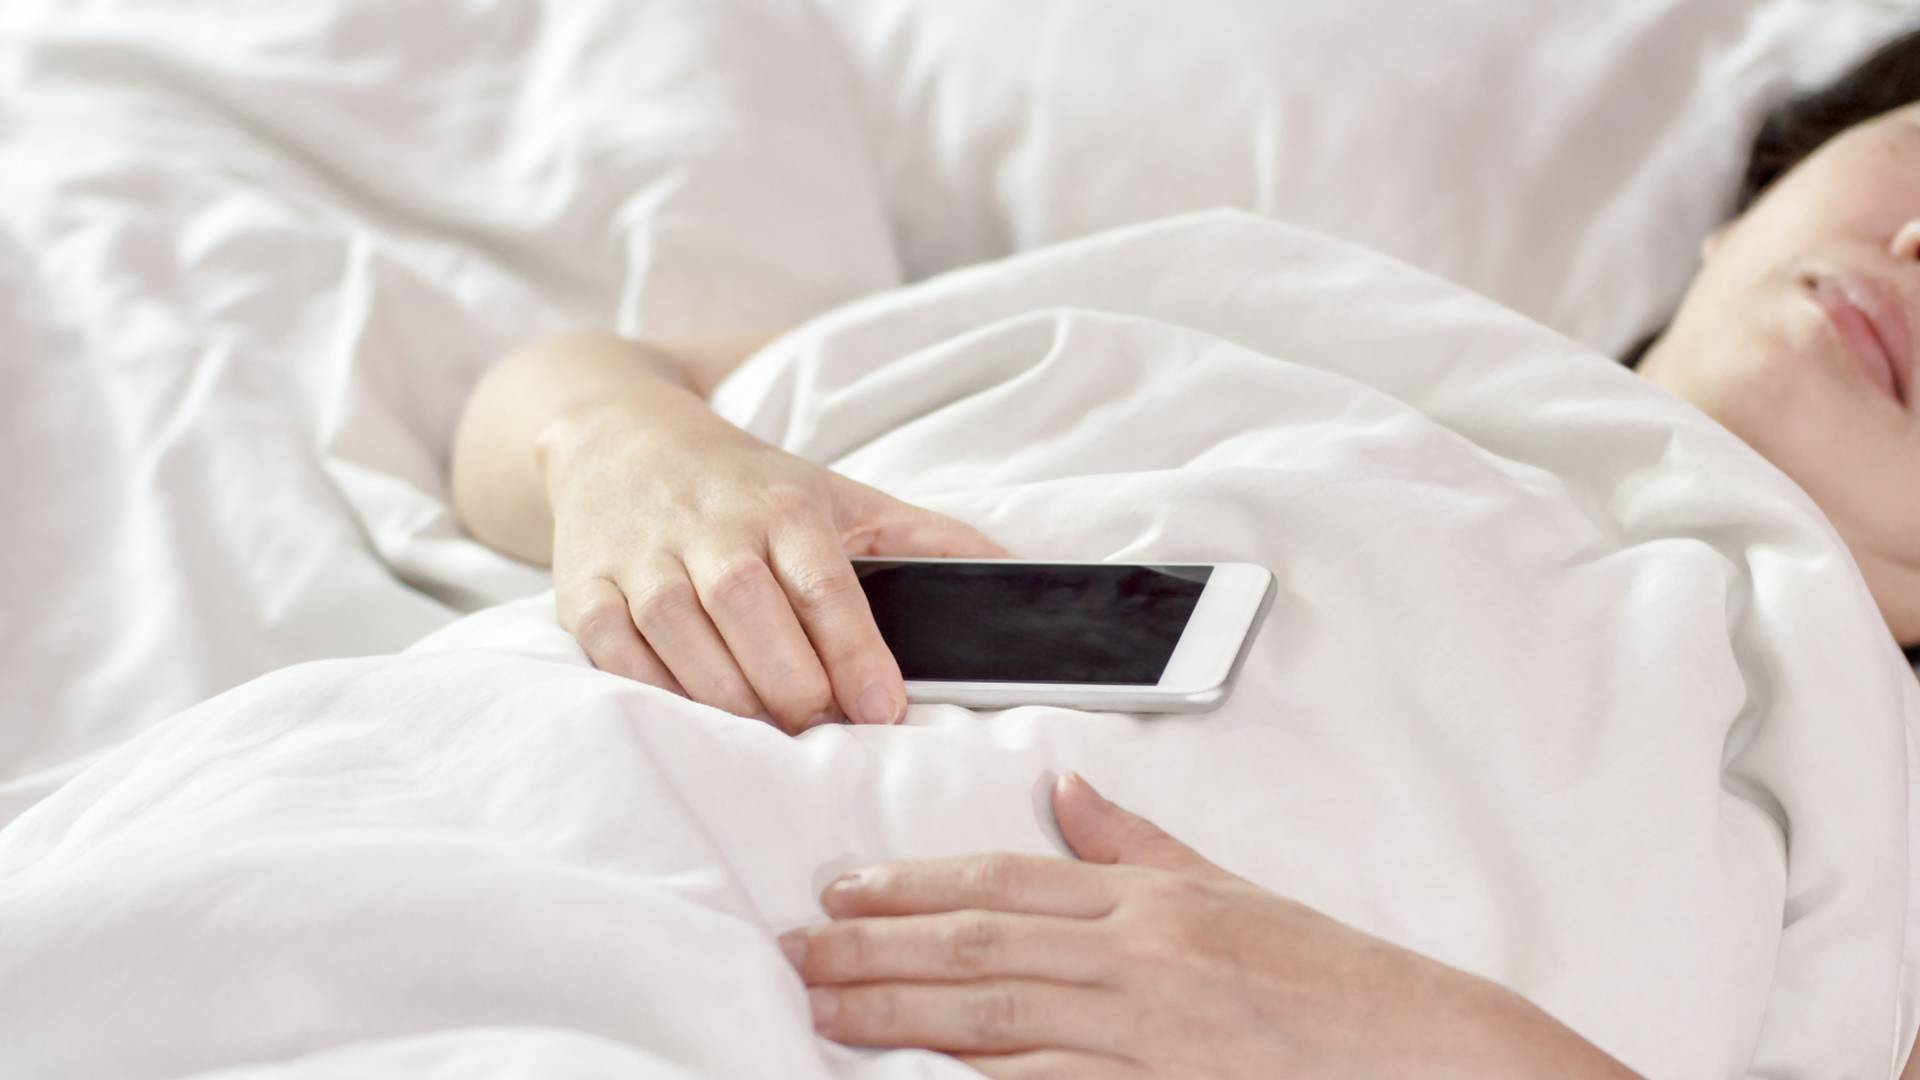 Biiiip! Jak szybko po przebudzeniu sięgasz po swojego smartfona?